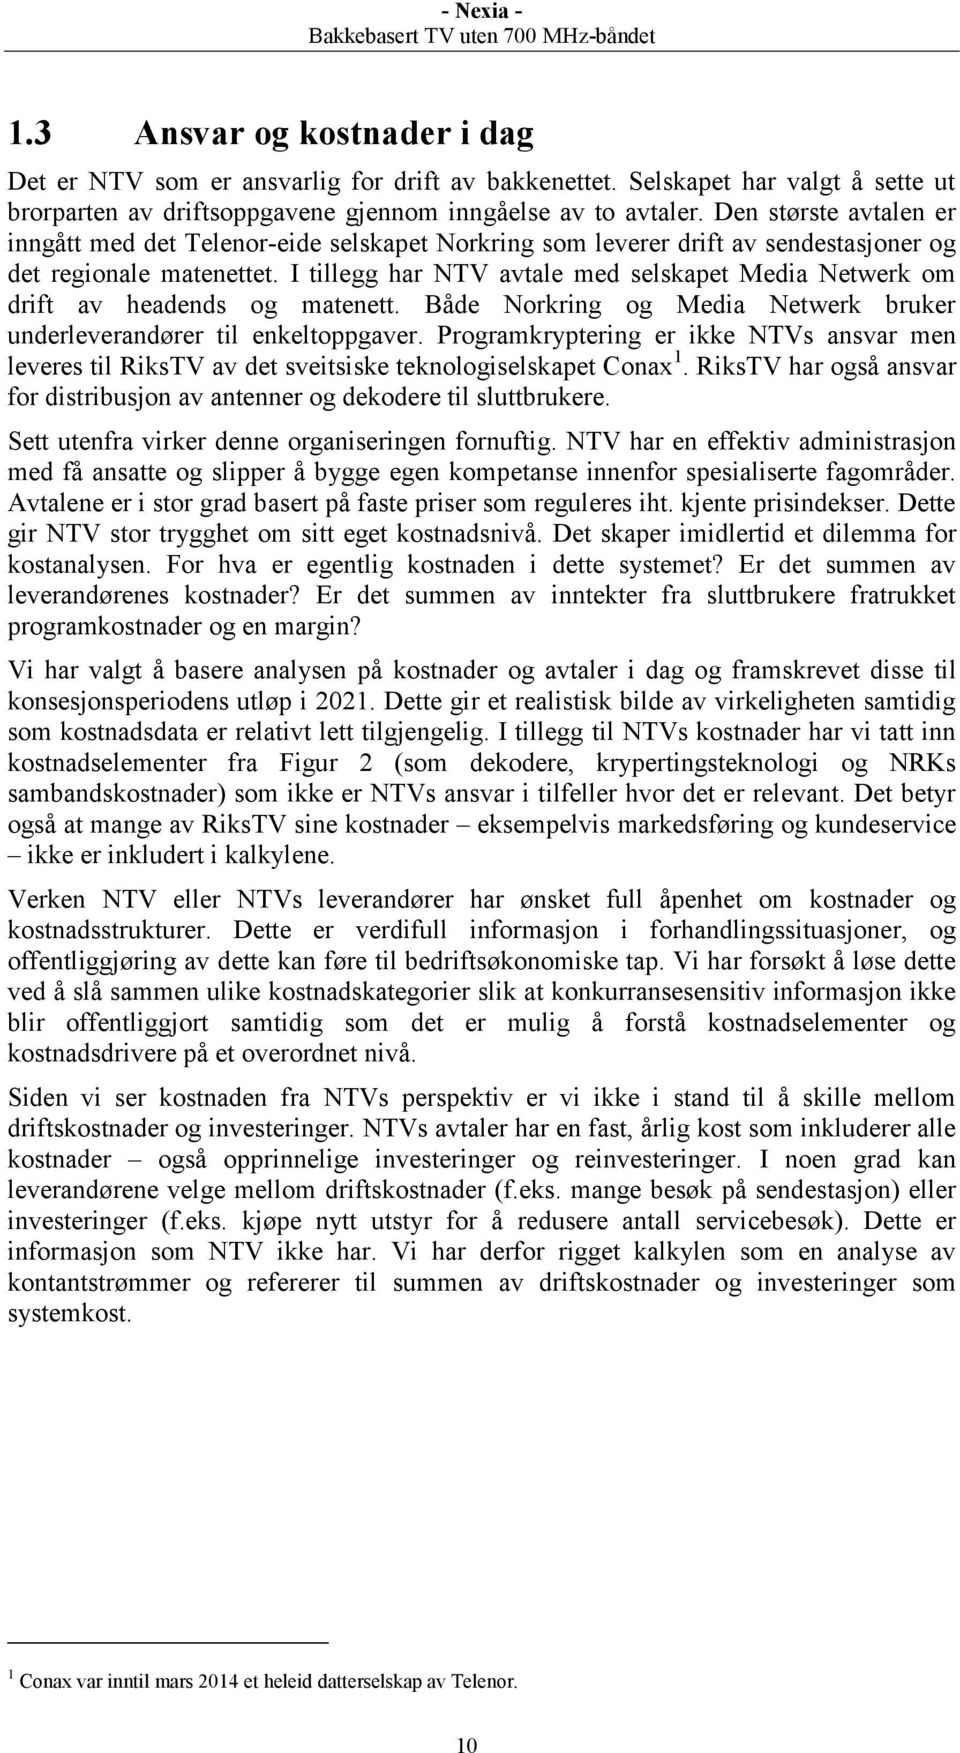 I tillegg har NTV avtale med selskapet Media Netwerk om drift av headends og matenett. Både Norkring og Media Netwerk bruker underleverandører til enkeltoppgaver.